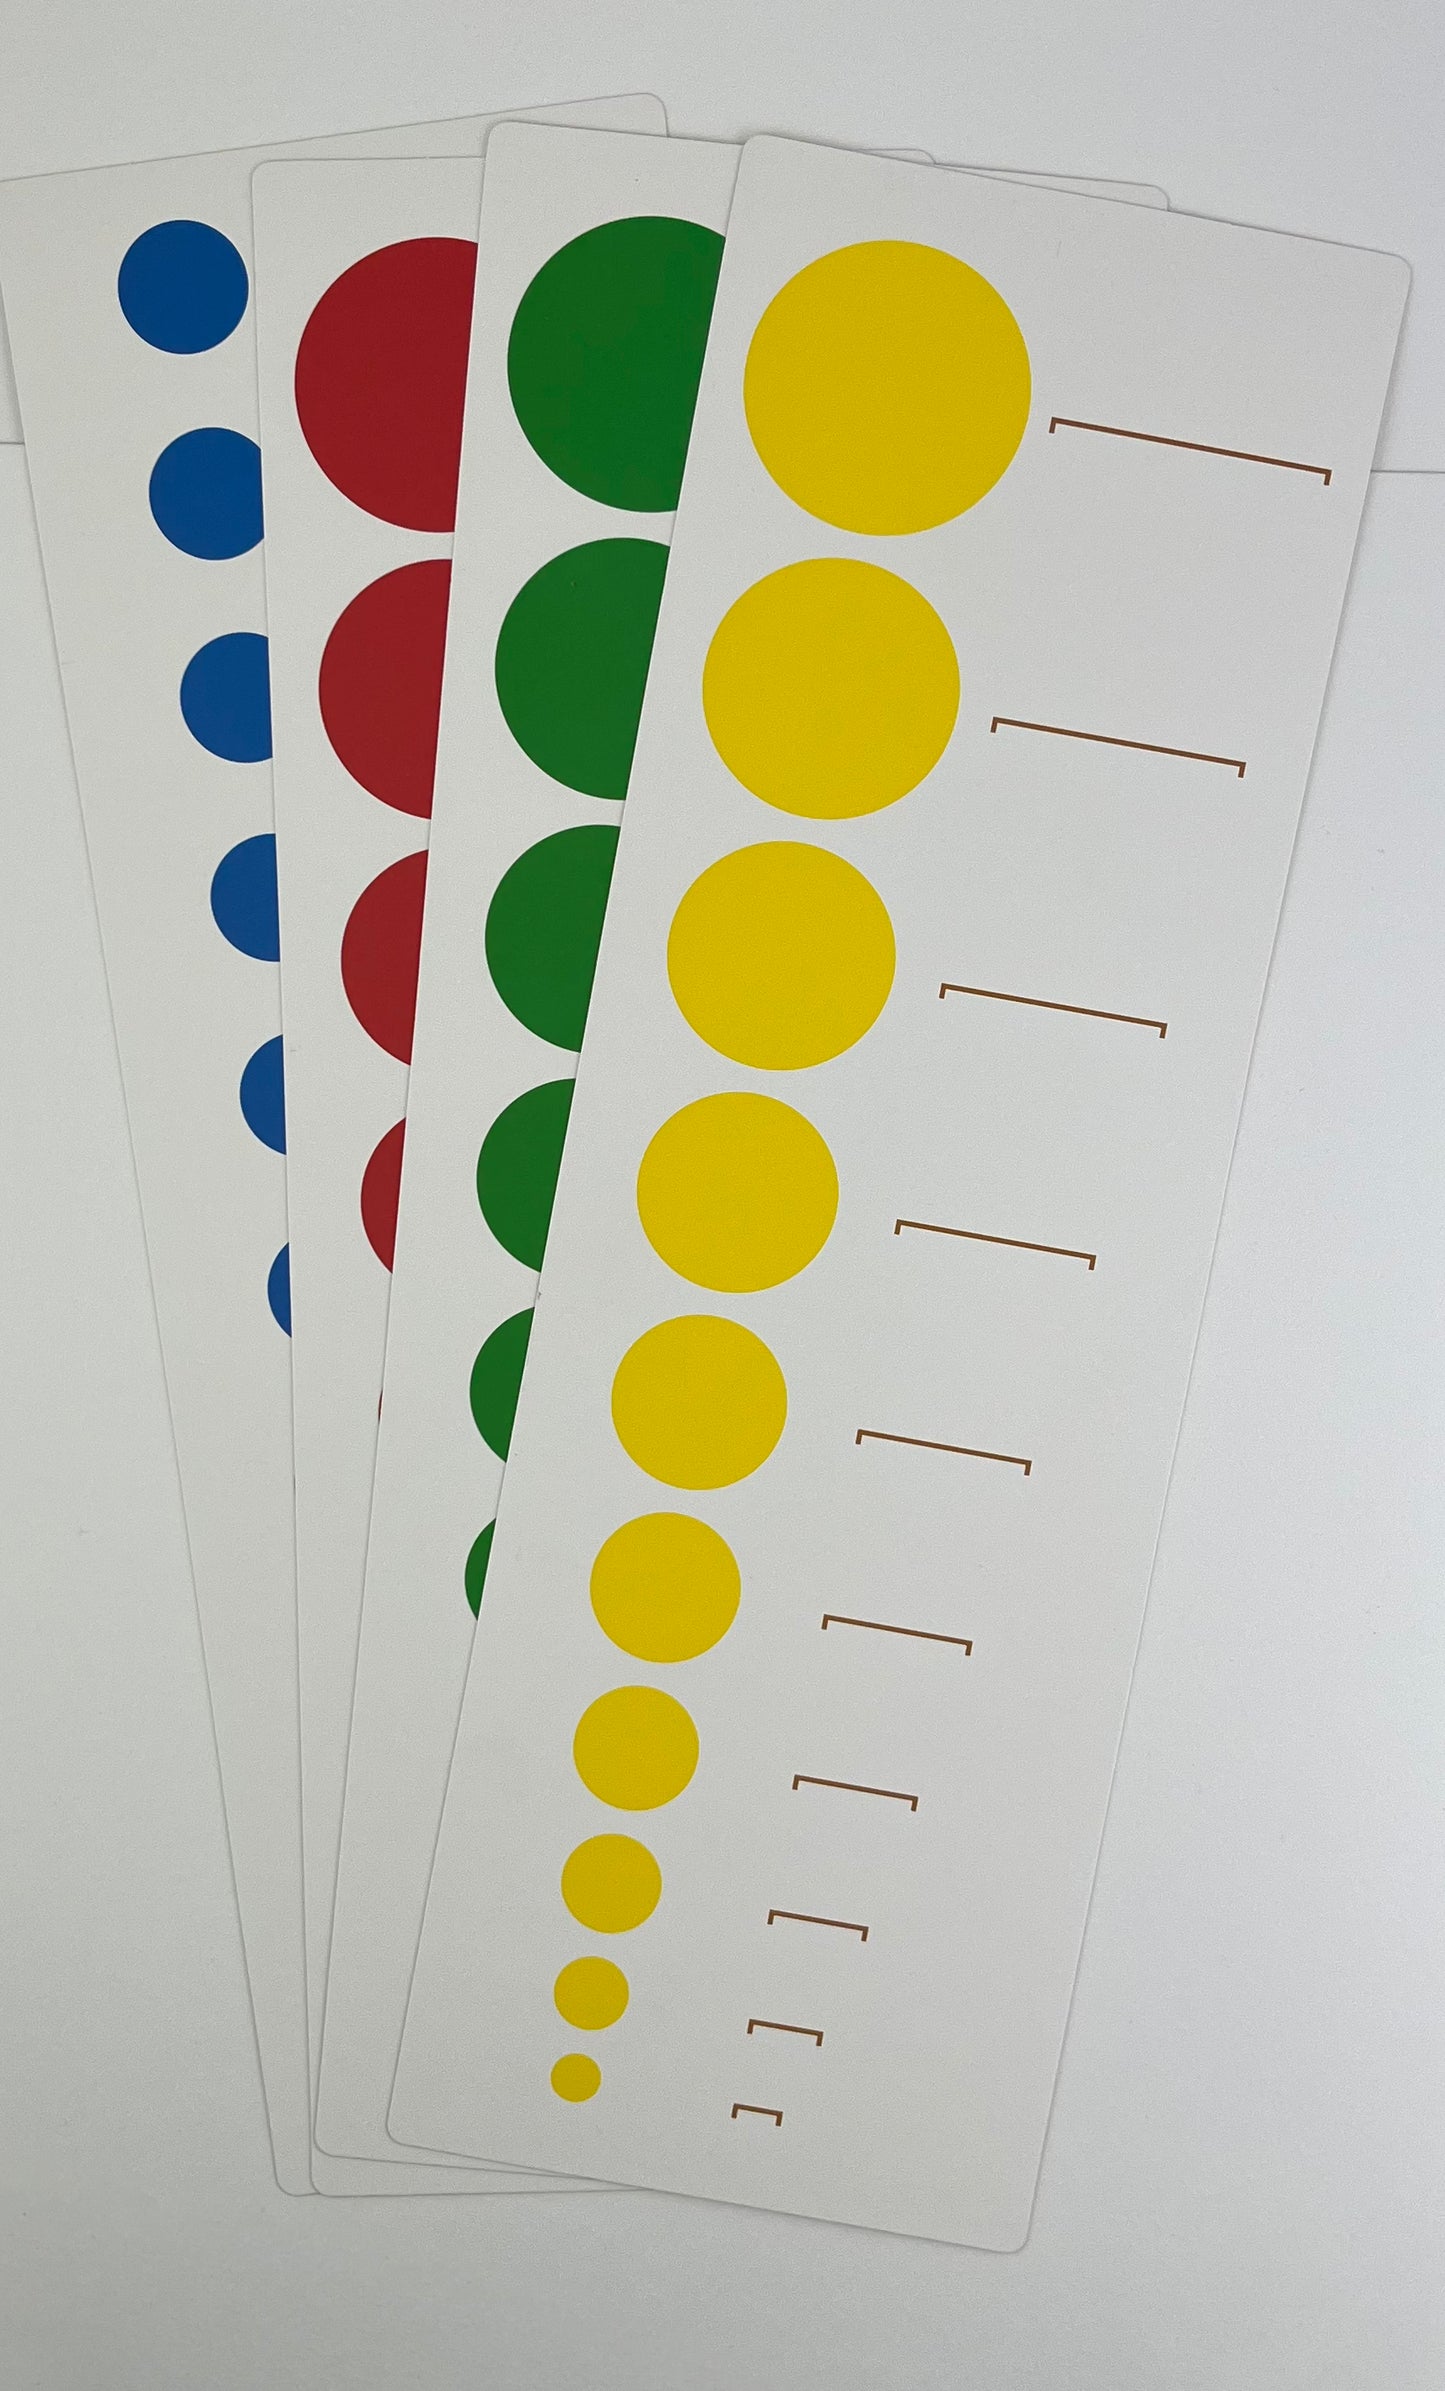 Färgcylindrarna kort visar höjd och diameter